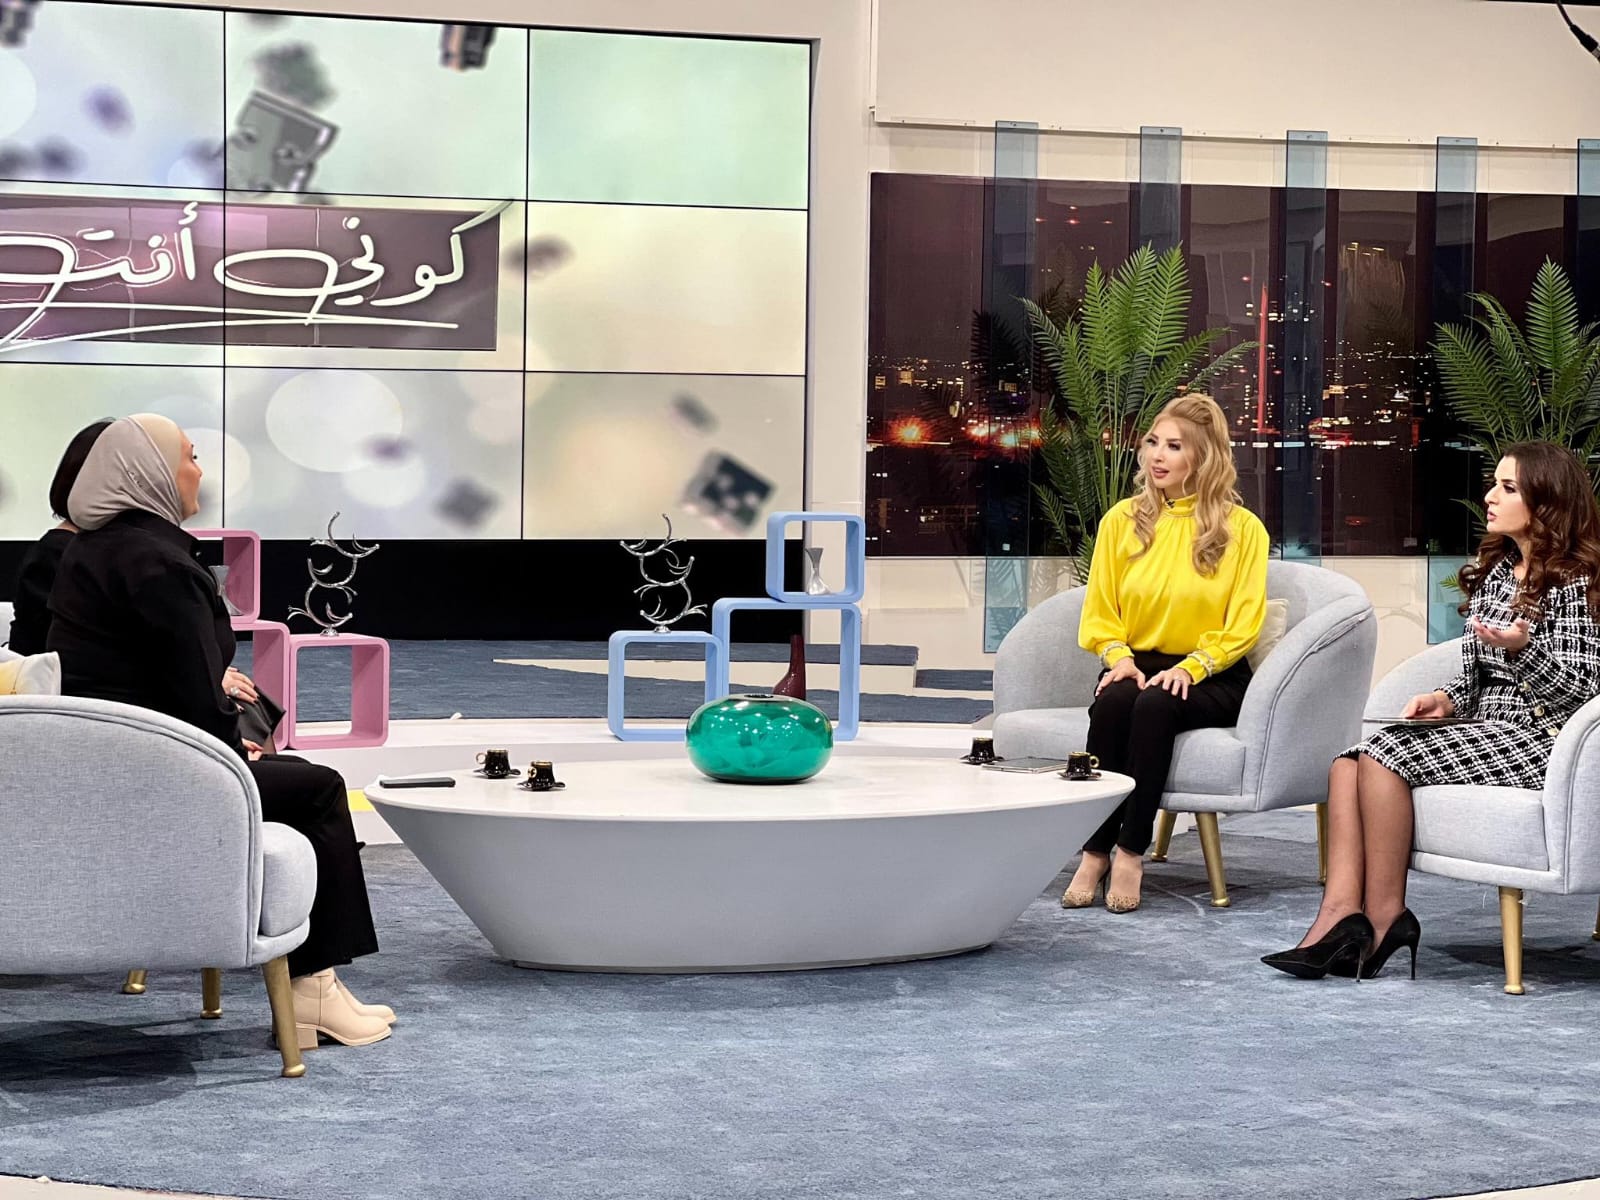 هموم المرأة العاملة في برنامج  كوني انت على التلفزيون الأردني